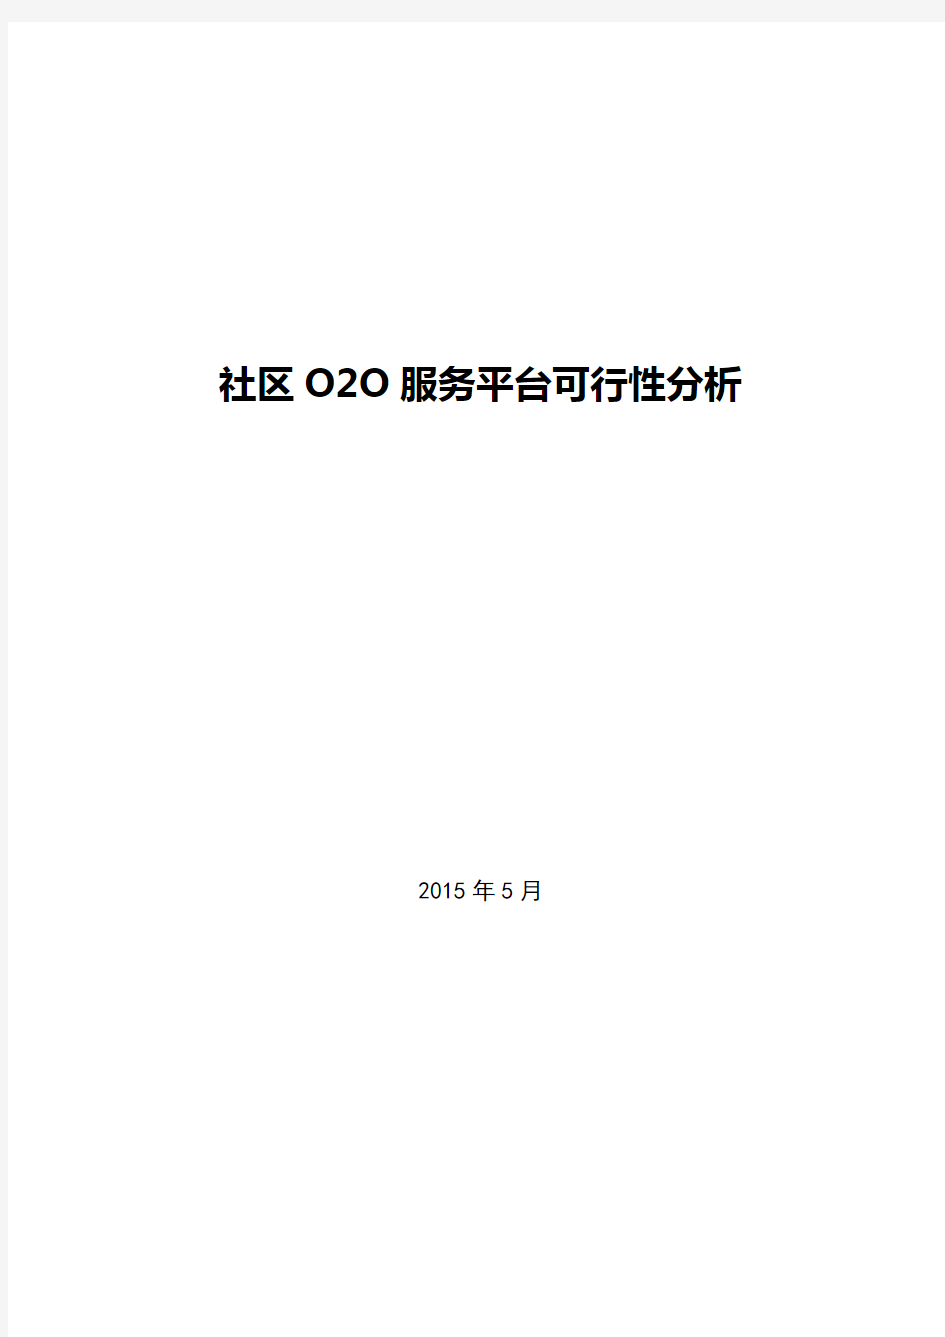 社区O2O服务平台可行性分析报告